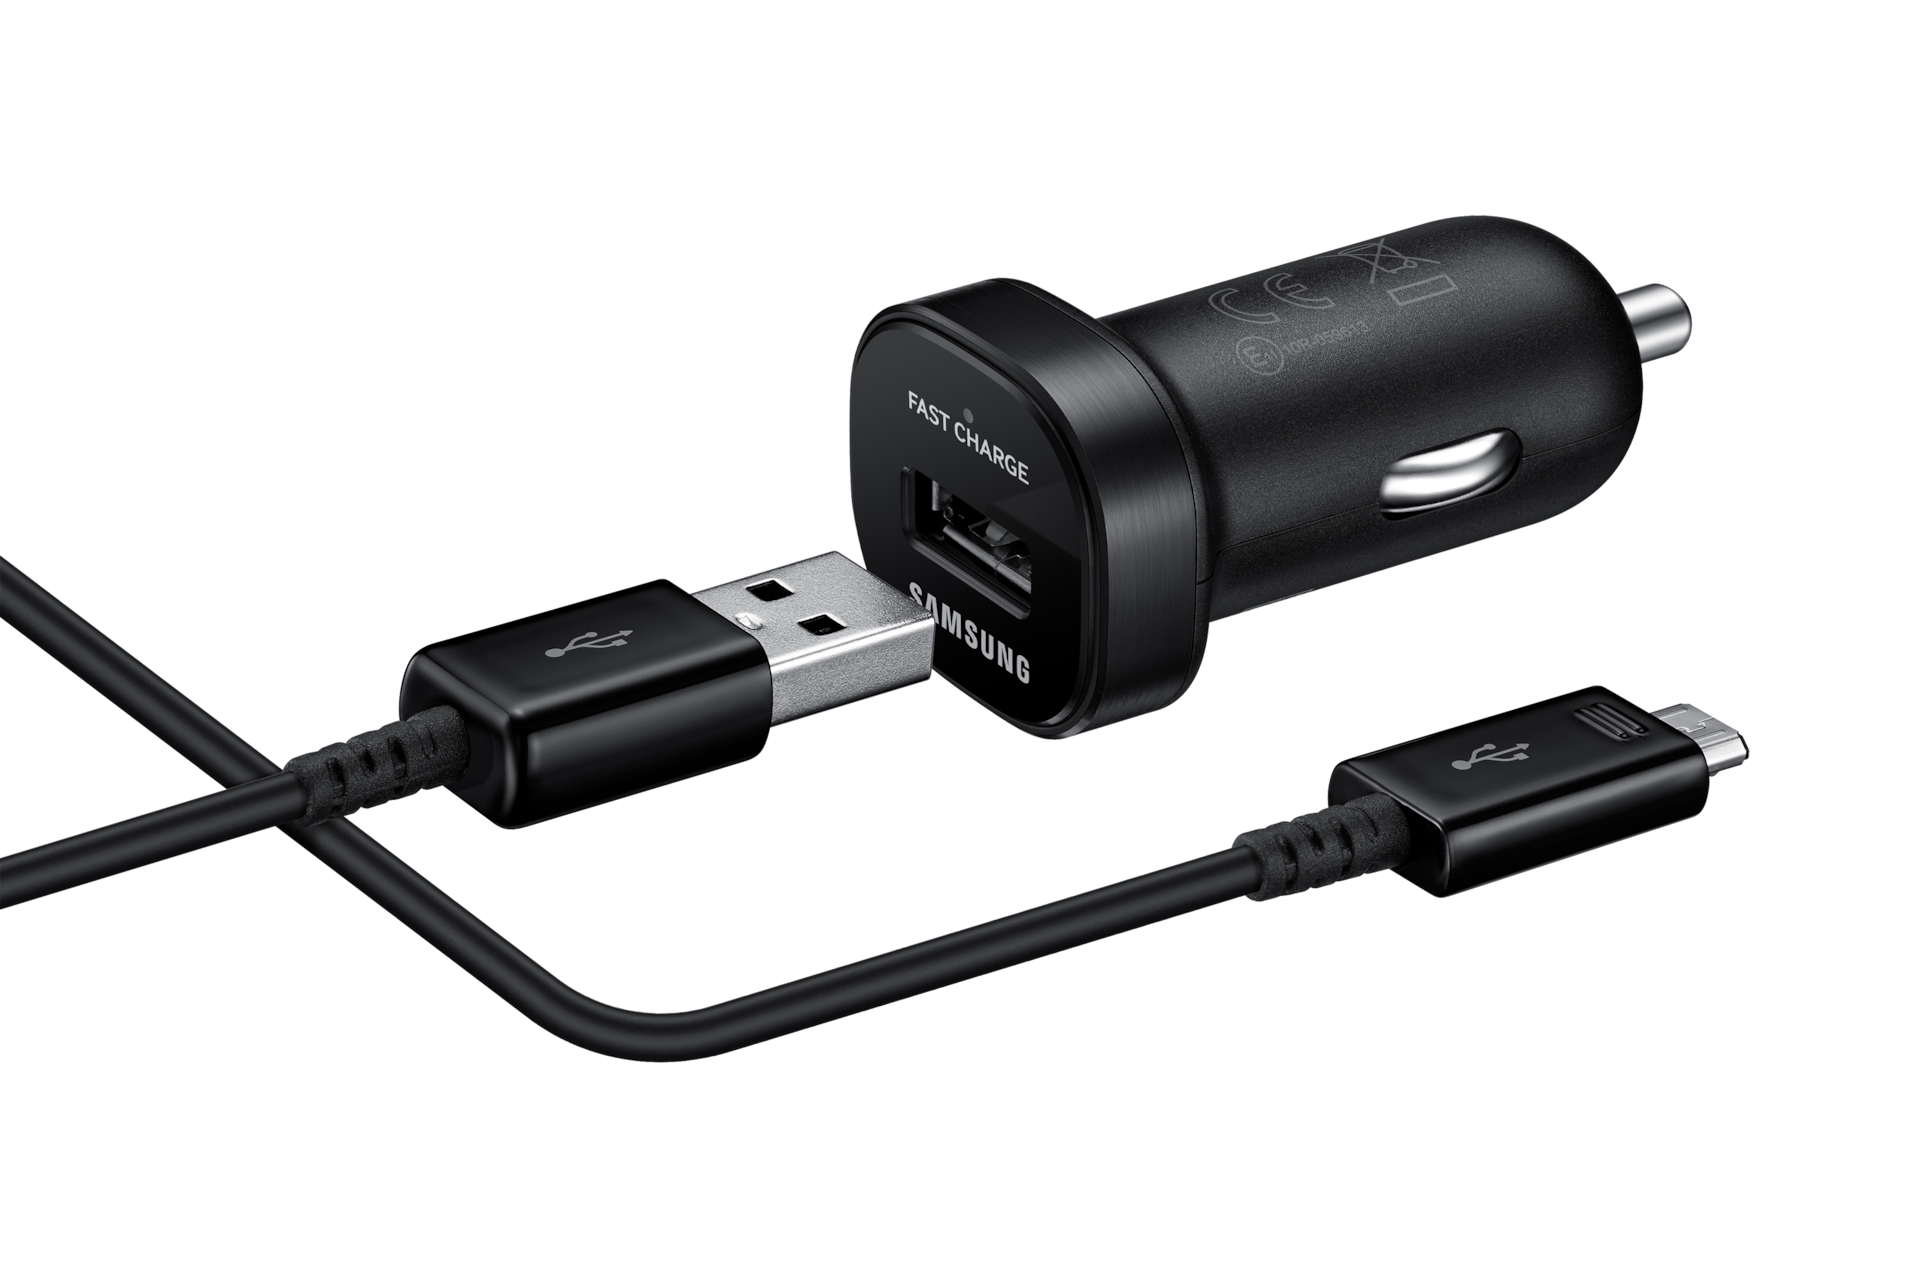  Kuku - Adaptador micro USB a tipo C, convierte entrada micro USB  a USB tipo C. Carga rápida para Samsung Galaxy S9 S8 Plus Note 9 8,  MacBook, LG V30 G5